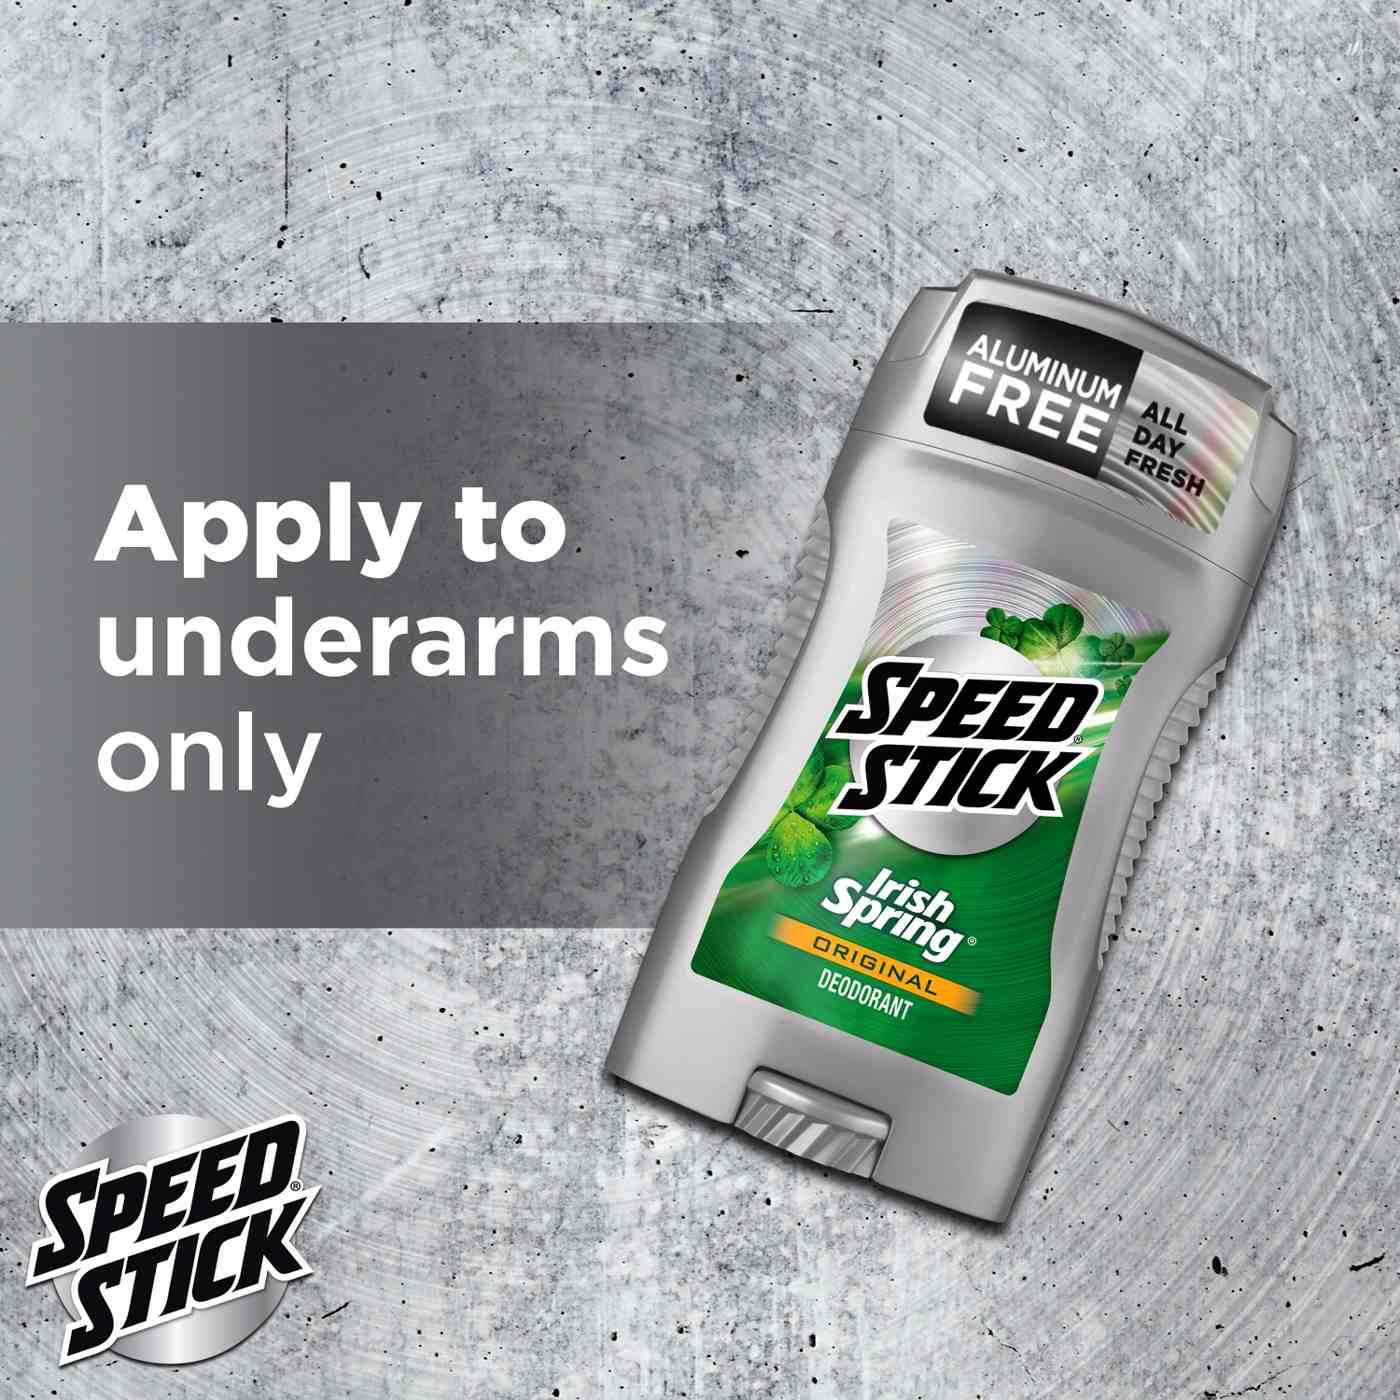 Speed Stick Irish Spring Trial Size Deodorant - Original; image 5 of 10